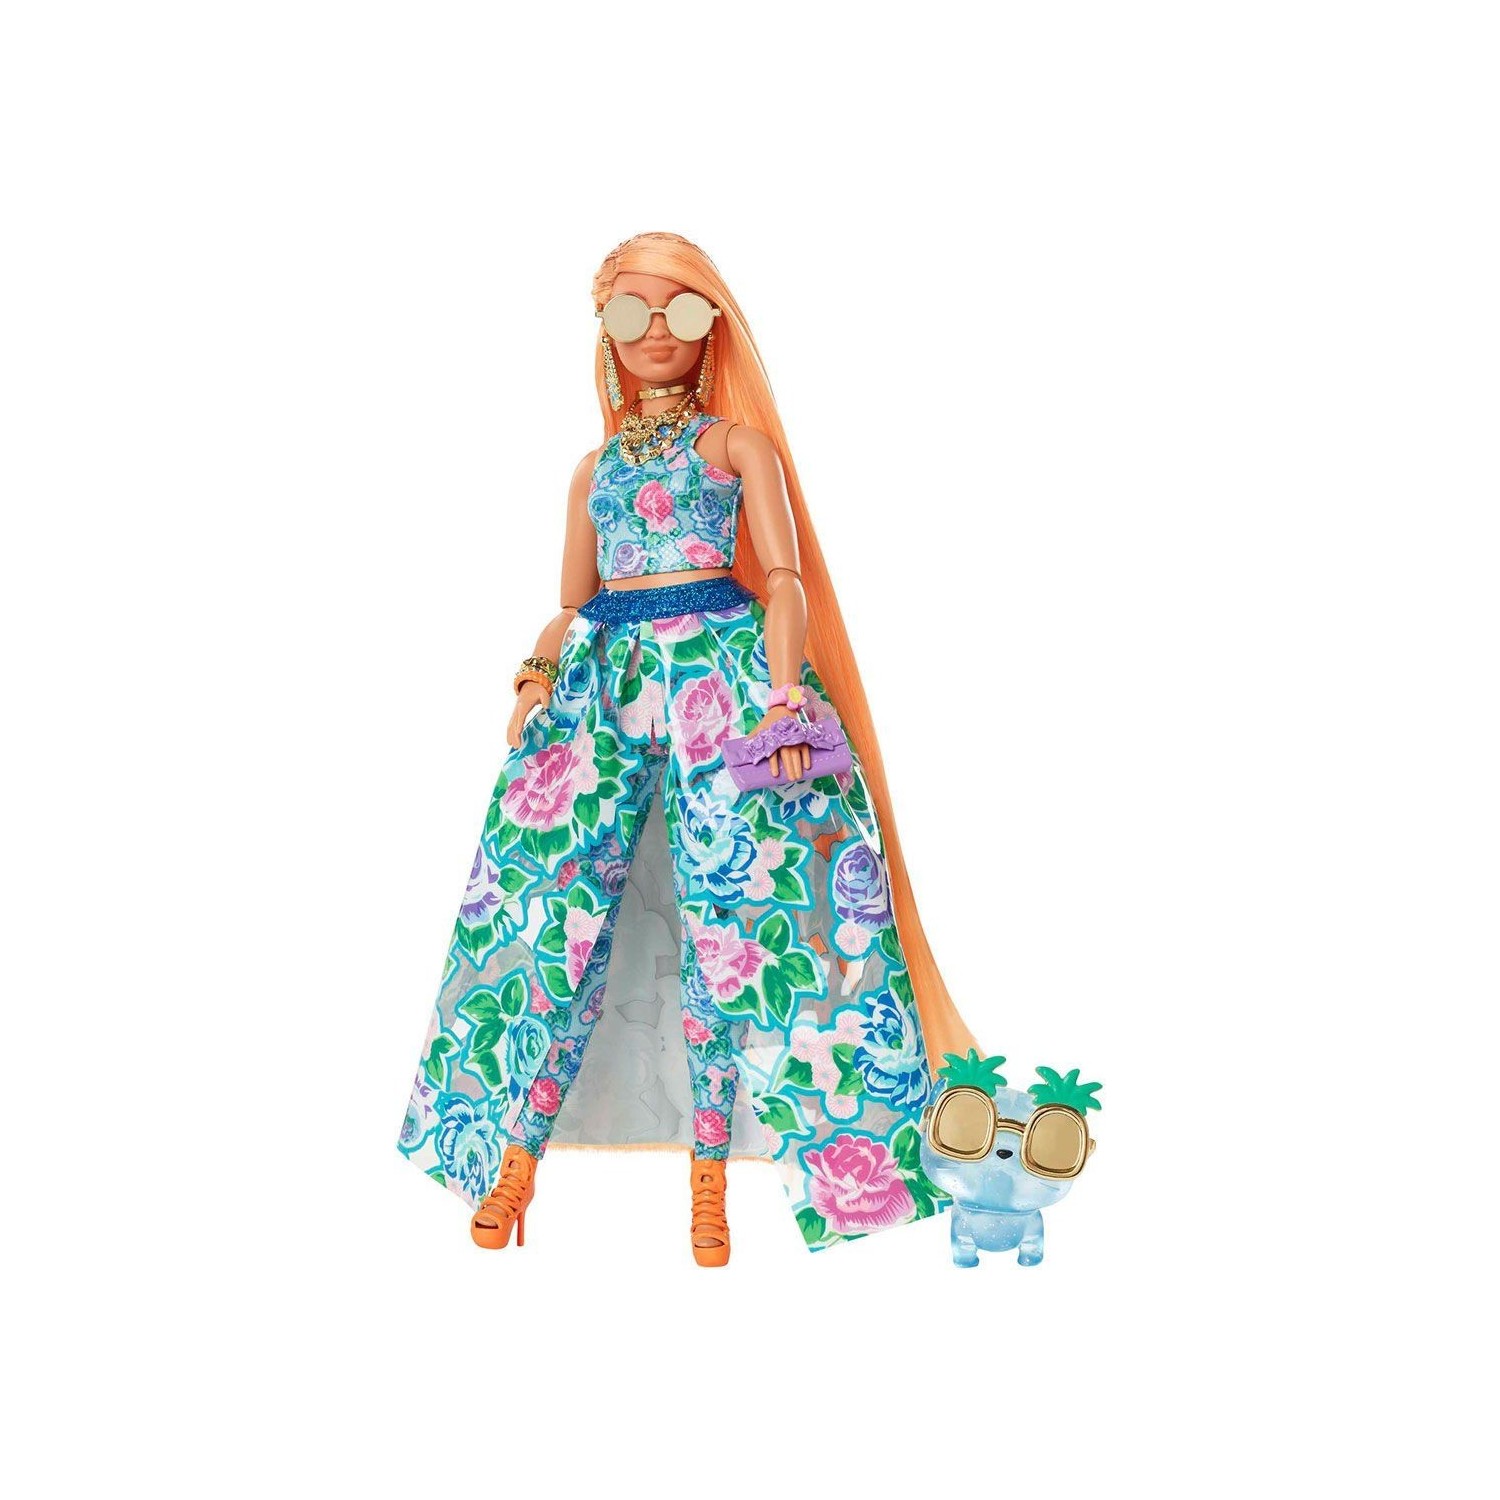 Кукла Barbie Extra Fancy в цветочном костюме HHN14 модное платье для куклы 1 6 bjd одежда для куклы барби наряды для куклы барби одежда цветочное платье аксессуары для кукольного домика 11 5 дю